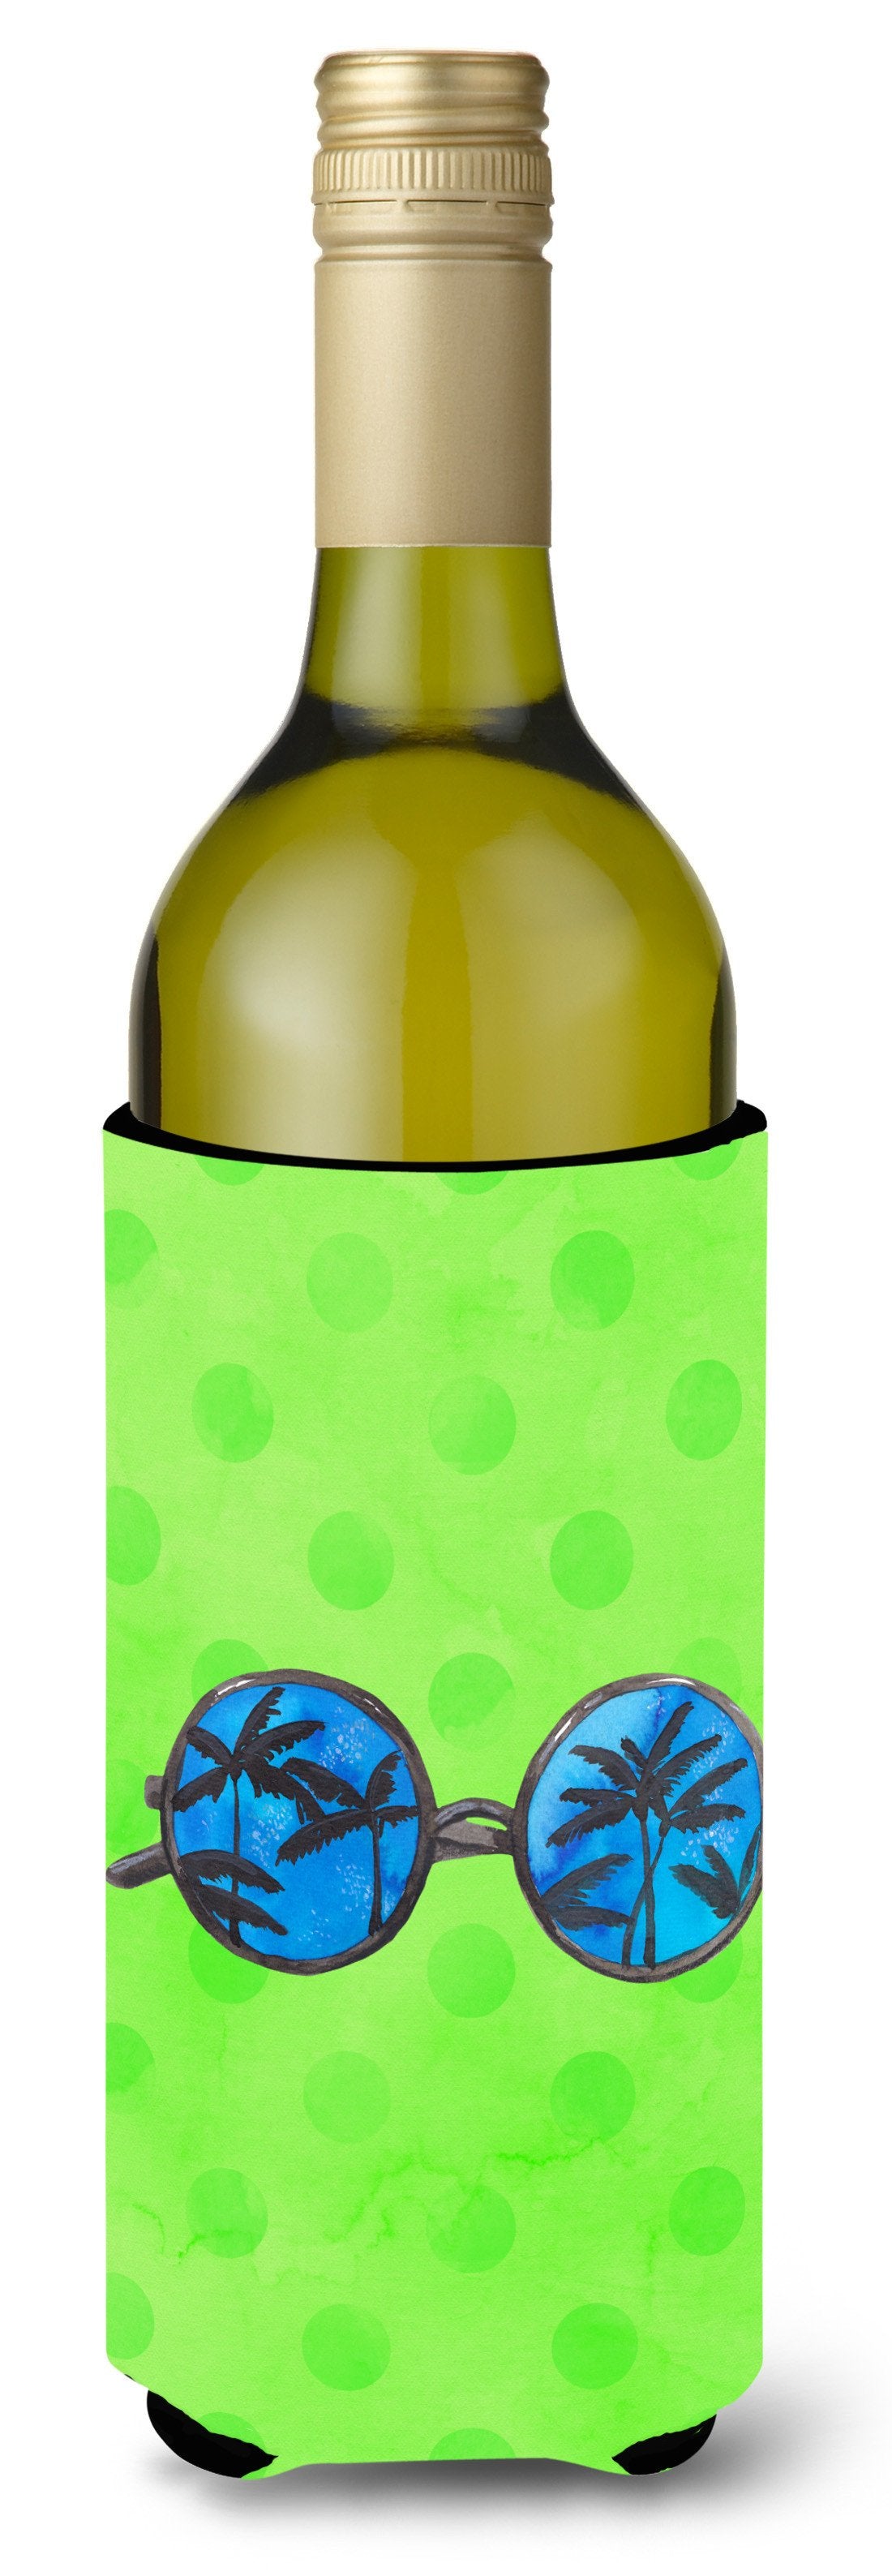 Sunglasses Green Polkadot Wine Bottle Beverge Insulator Hugger BB8175LITERK by Caroline's Treasures